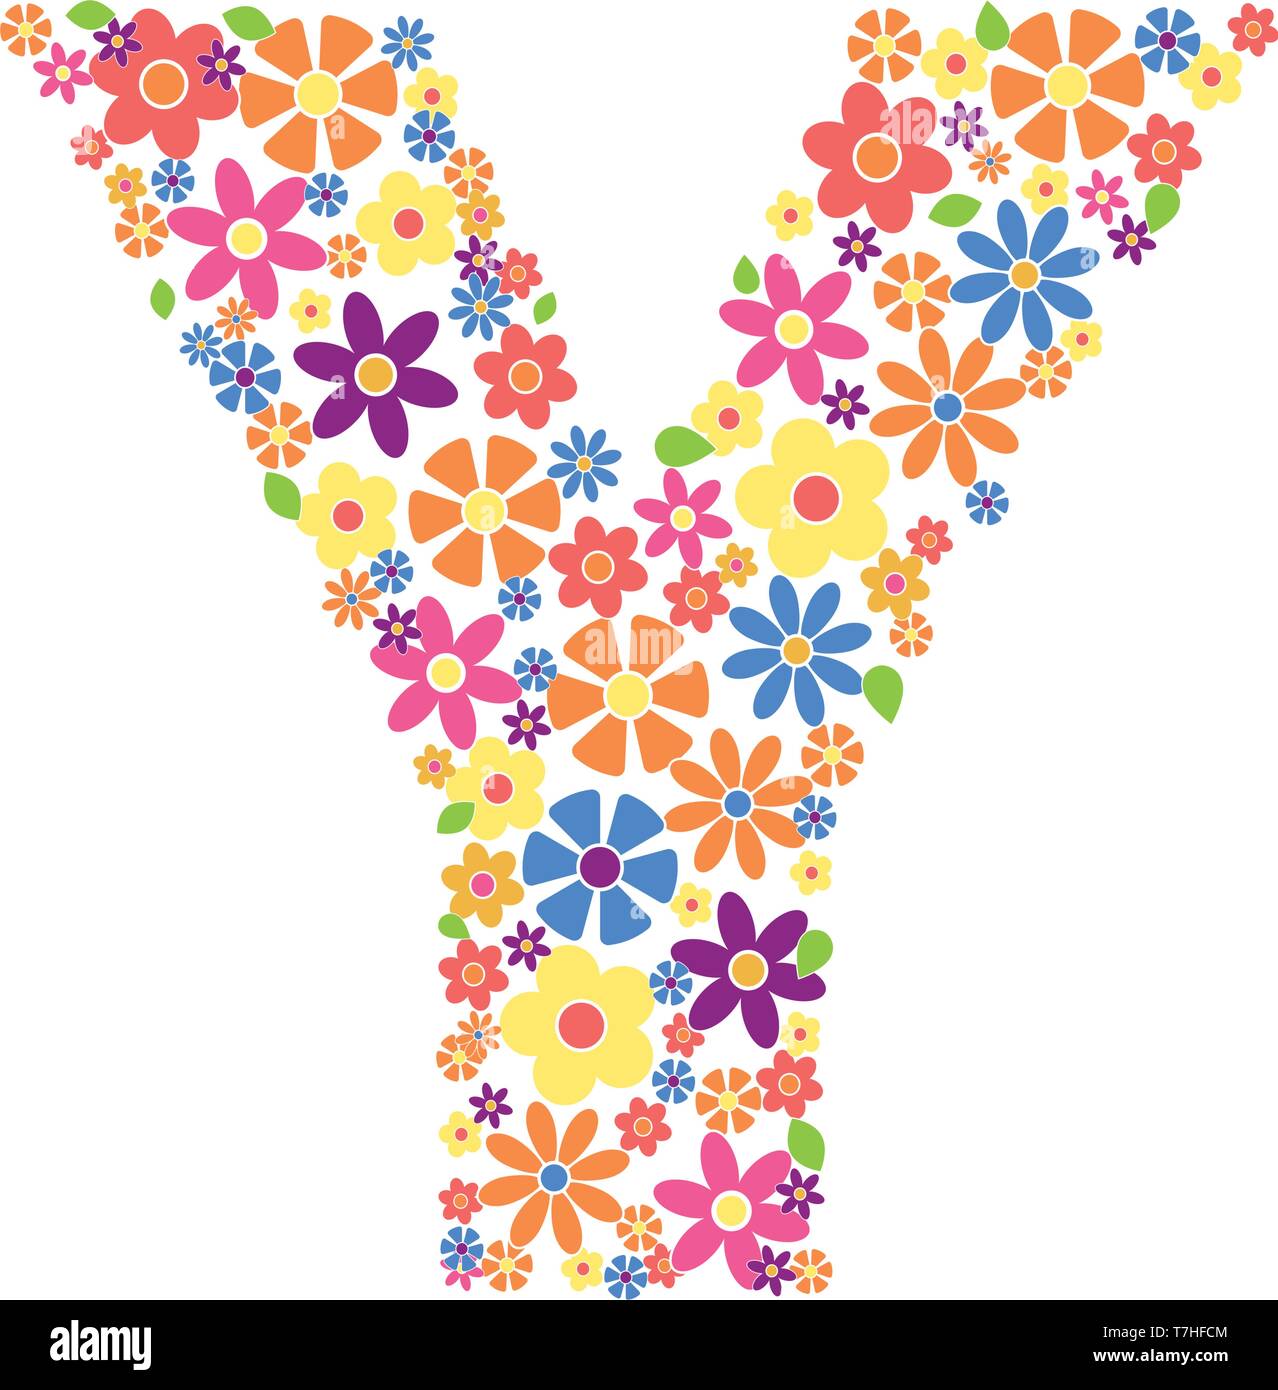 Buchstabe Y mit einer Vielzahl von bunten Blumen auf weißem Hintergrund Vektor-illustration isoliert gefüllt Stock Vektor